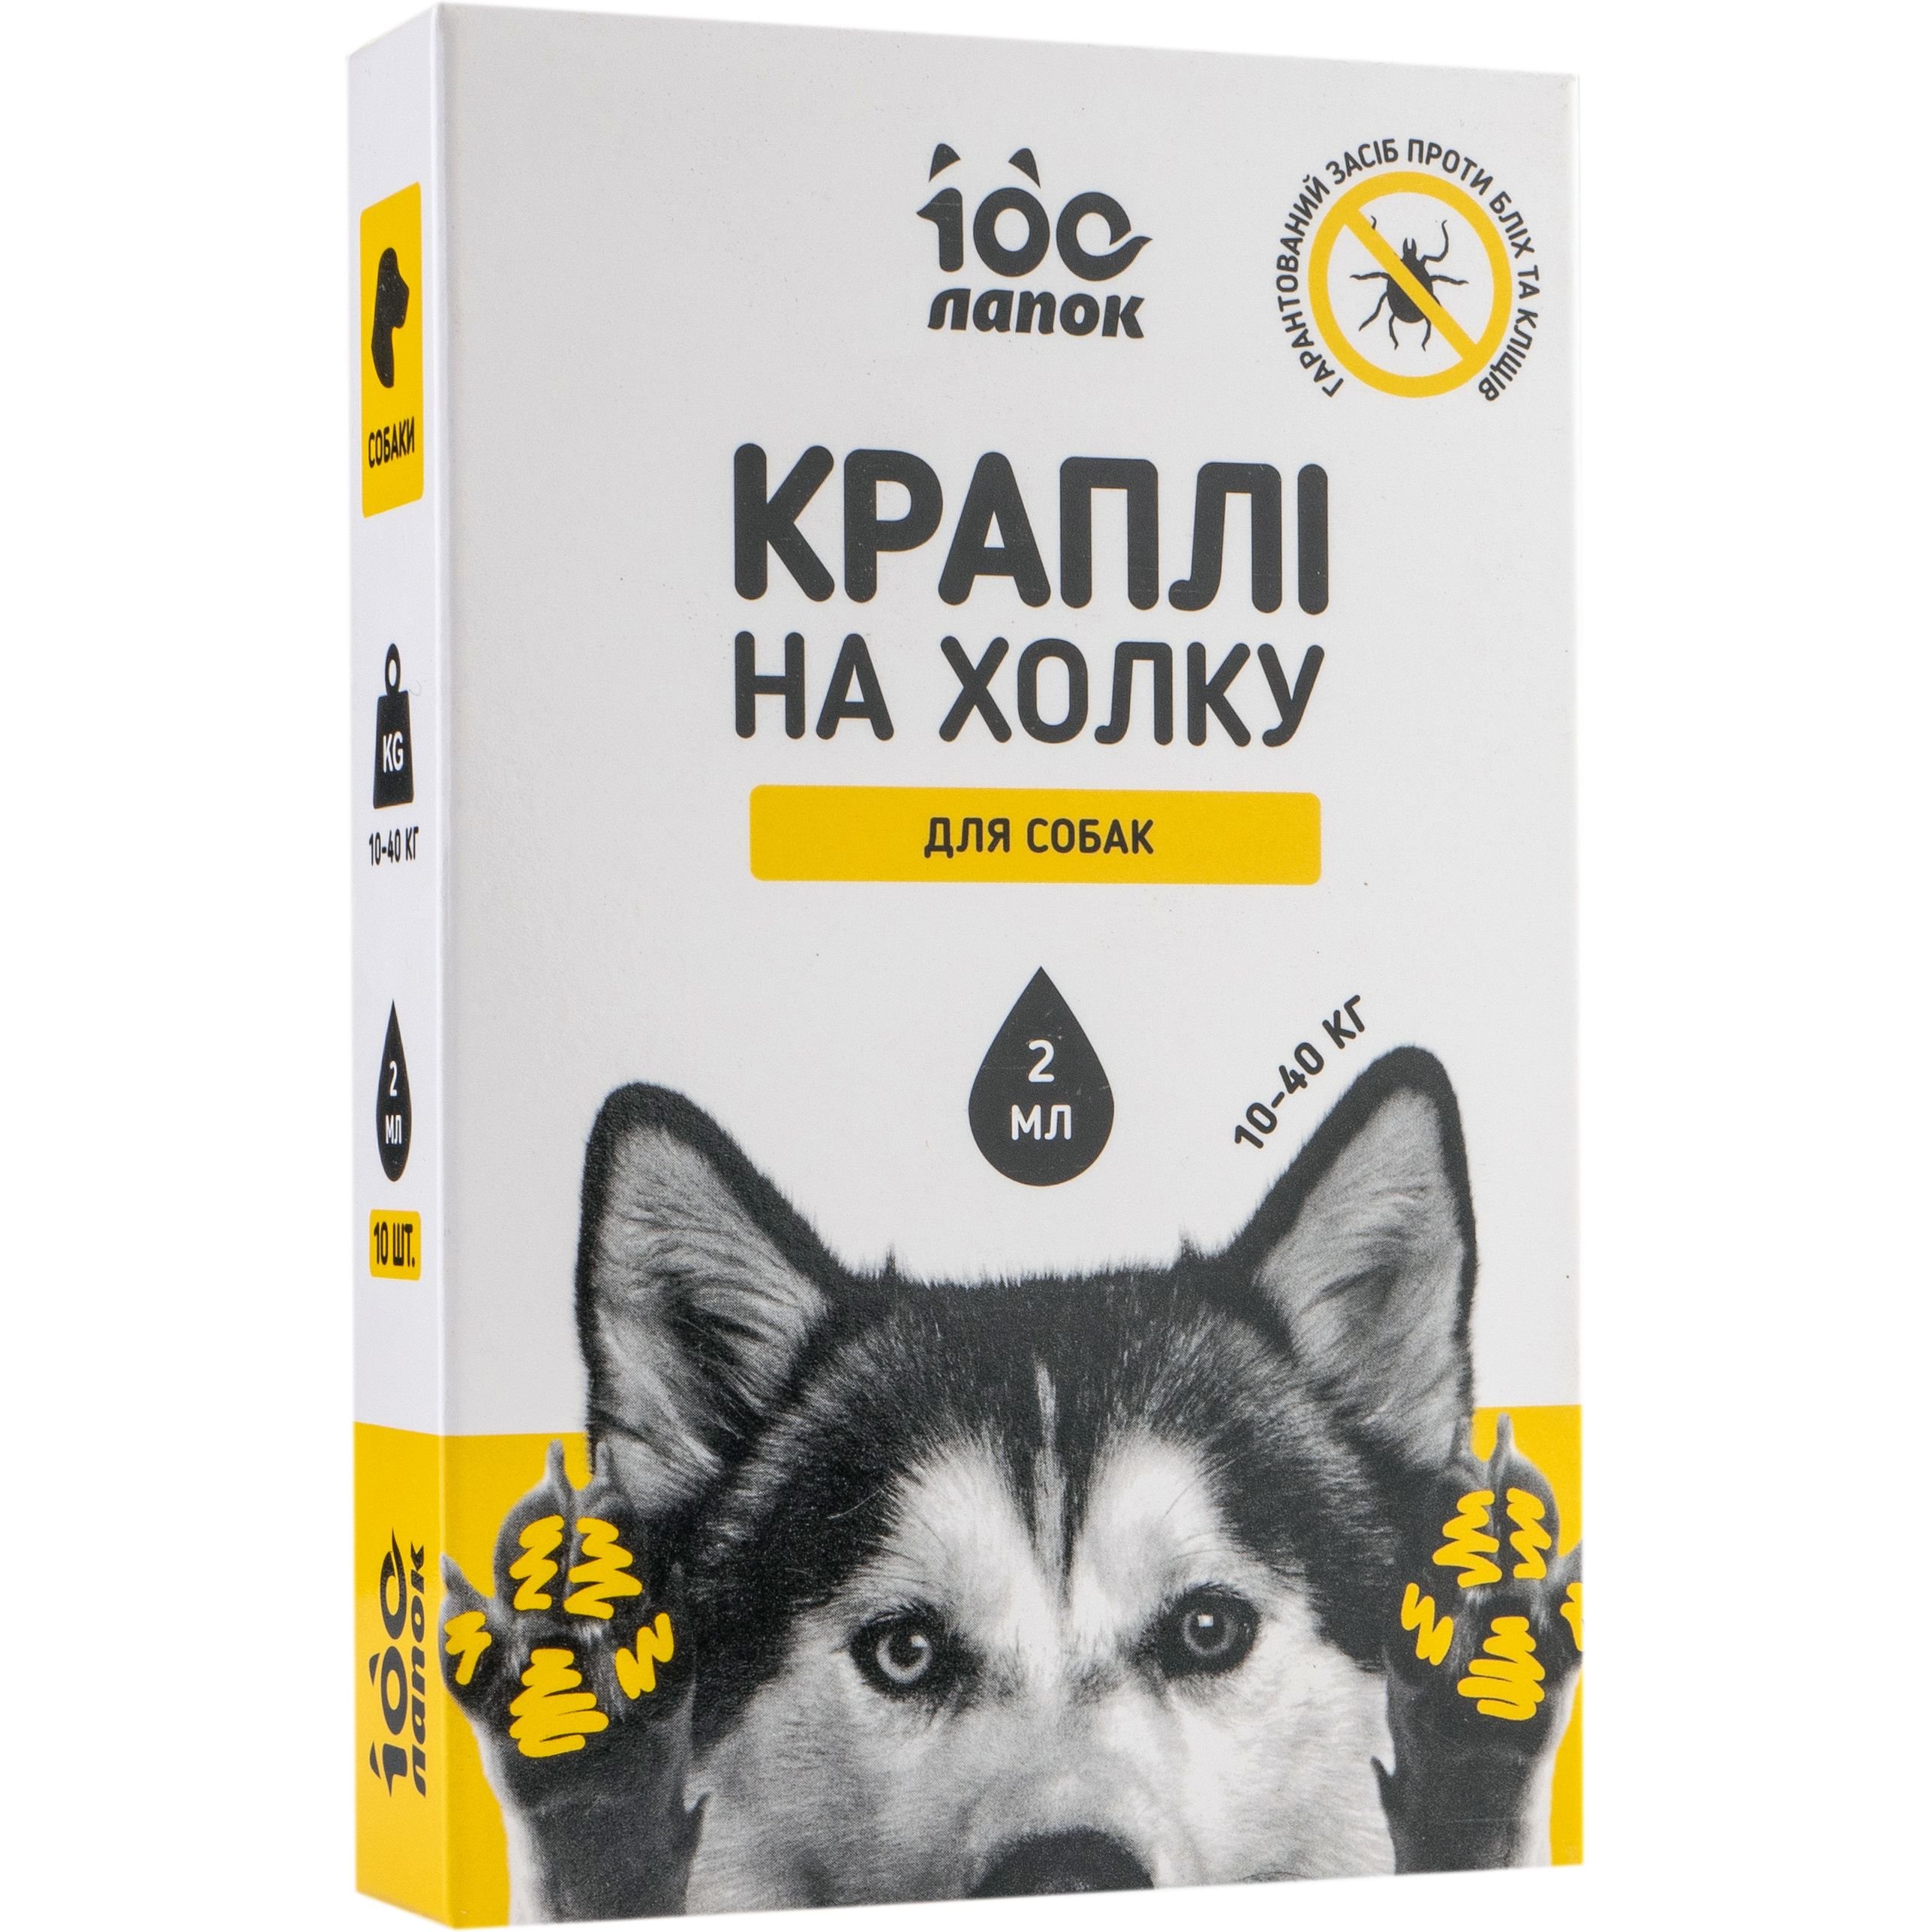 Краплі на холку Vitomax 100 Лапок протипаразитарні для собак 10-40 кг, 2 мл, 10 піпеток - фото 1